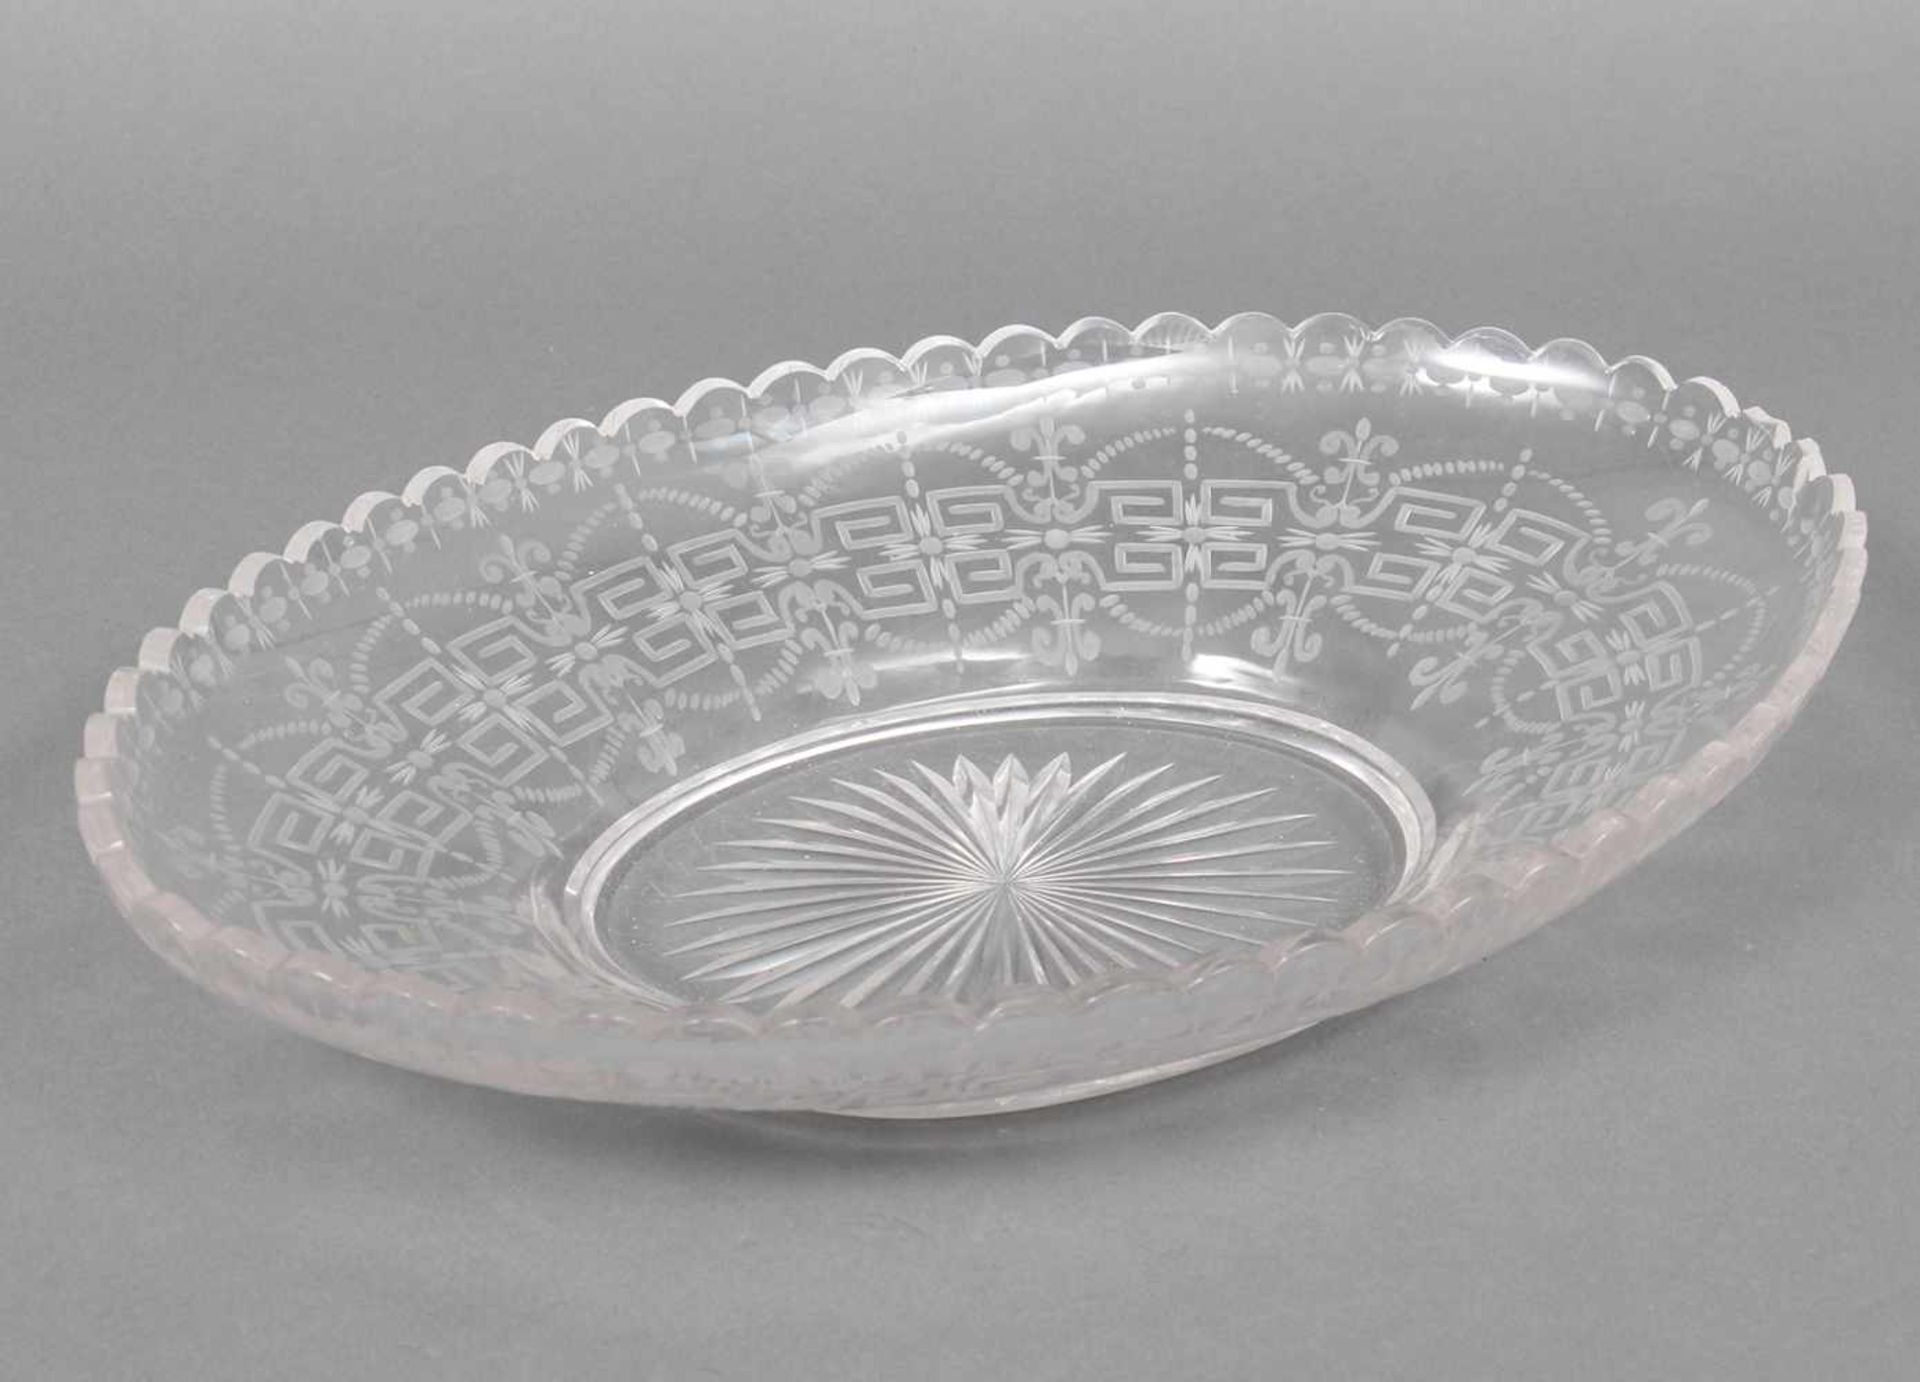 Anbietschale farbloses Kristallglas, wohl England, Mitte 19. Jhdt., ovale Form mit aufwendigem